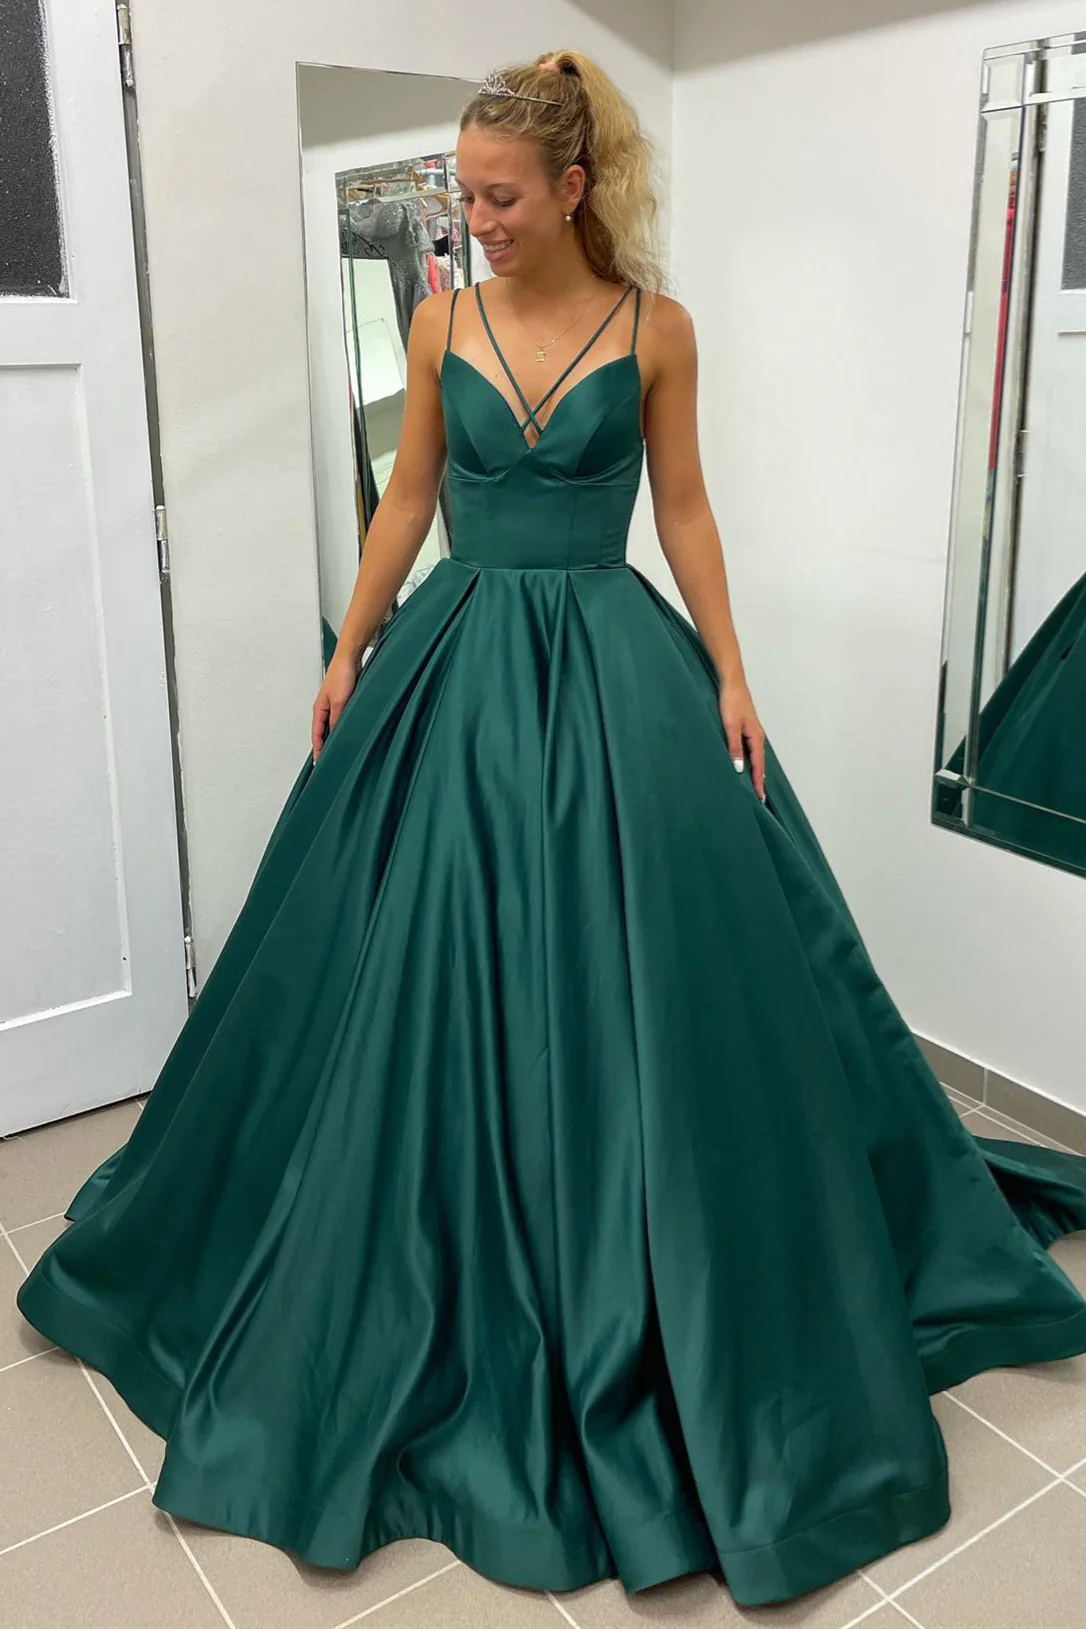 Green Evening Dress, Emerald Green Prom Dress, Wedding Reception Dress,  Luxury Corset Prom Dress,green Sequin Dress, Evening Gowns for Women 